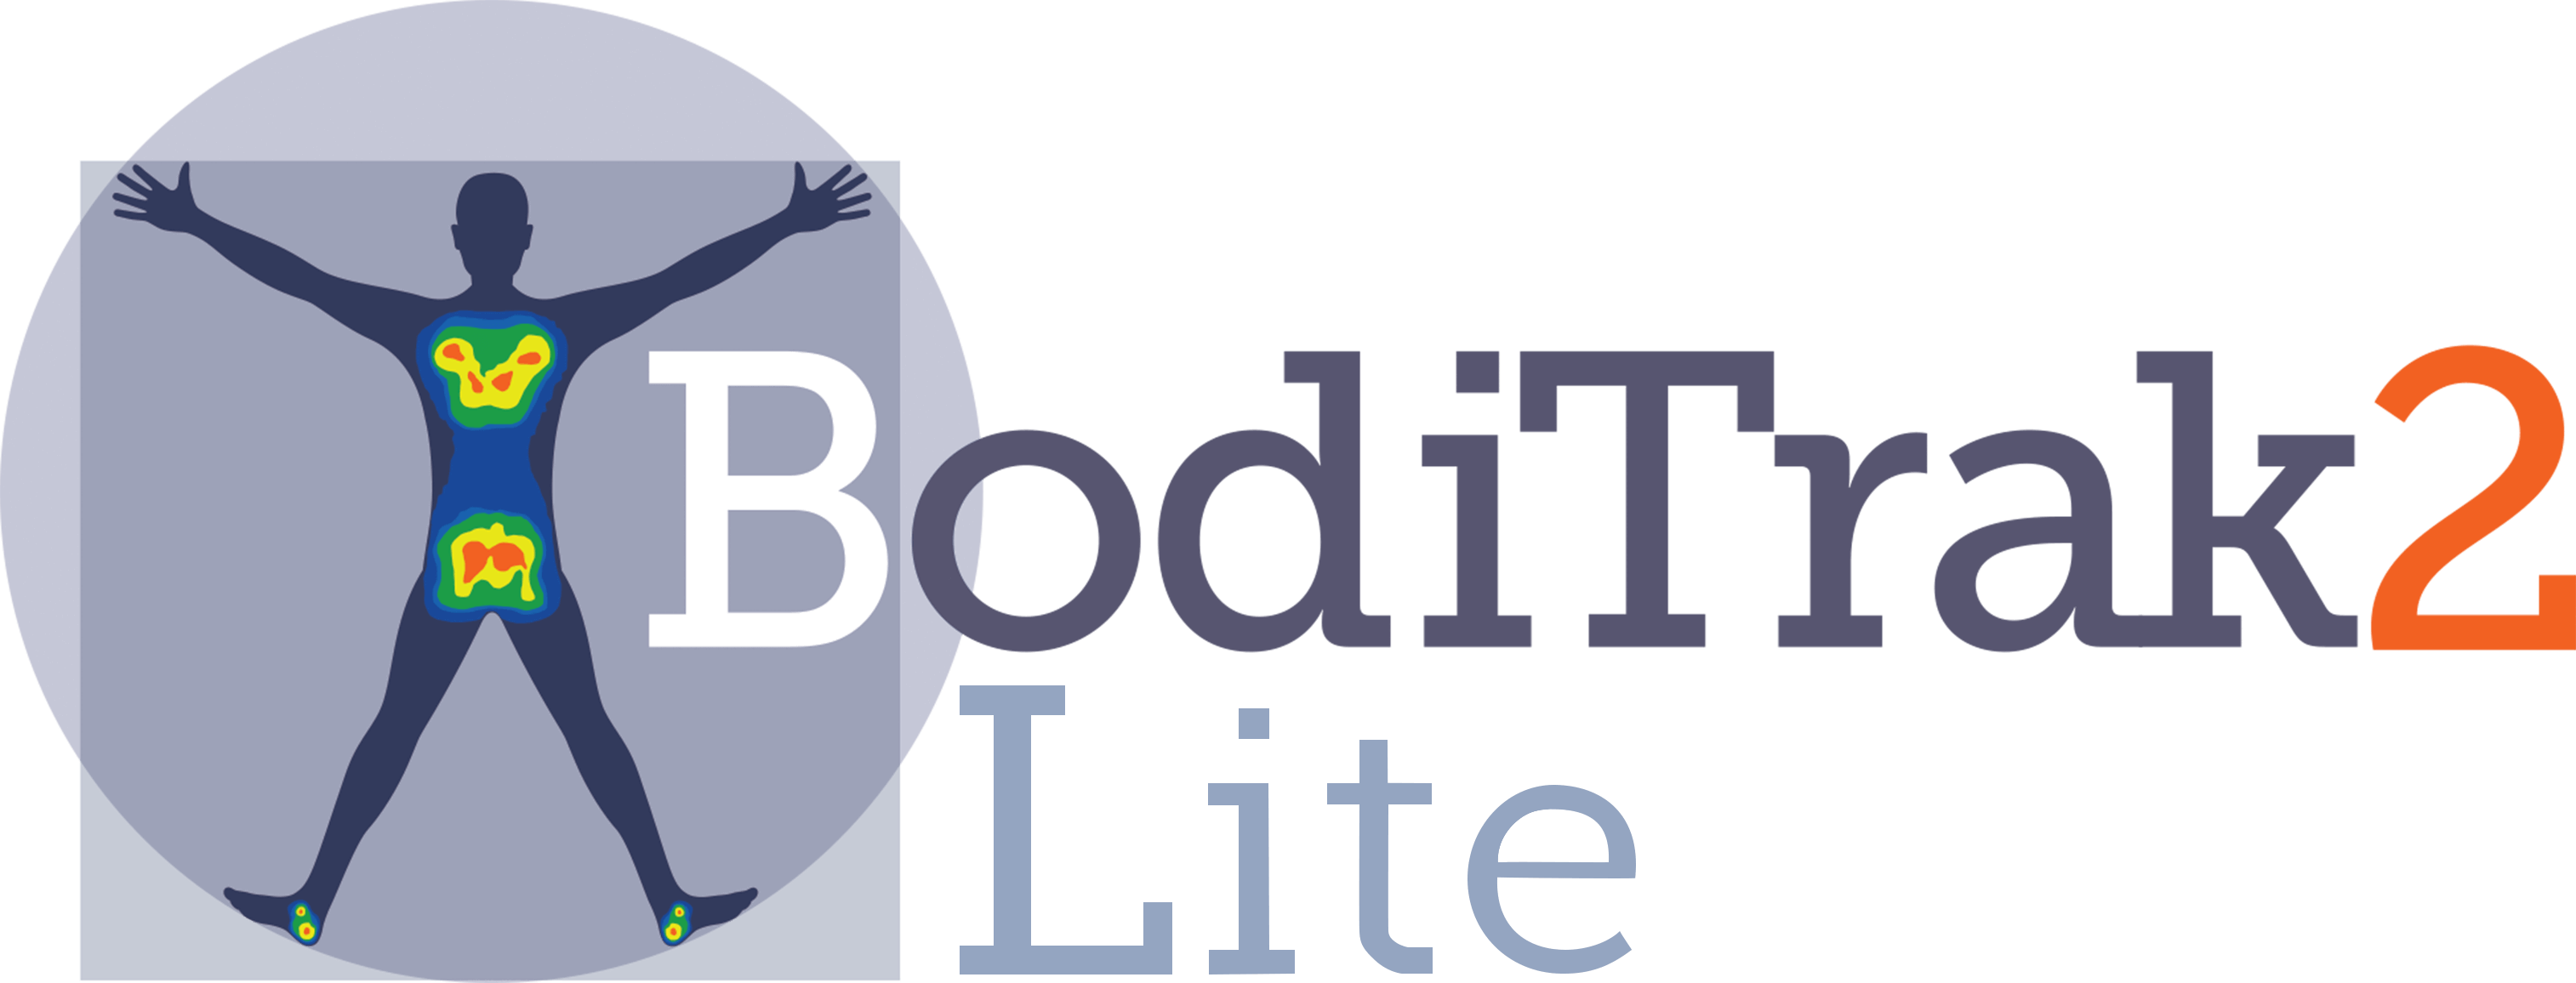 Lite Logo - BodiTrak2